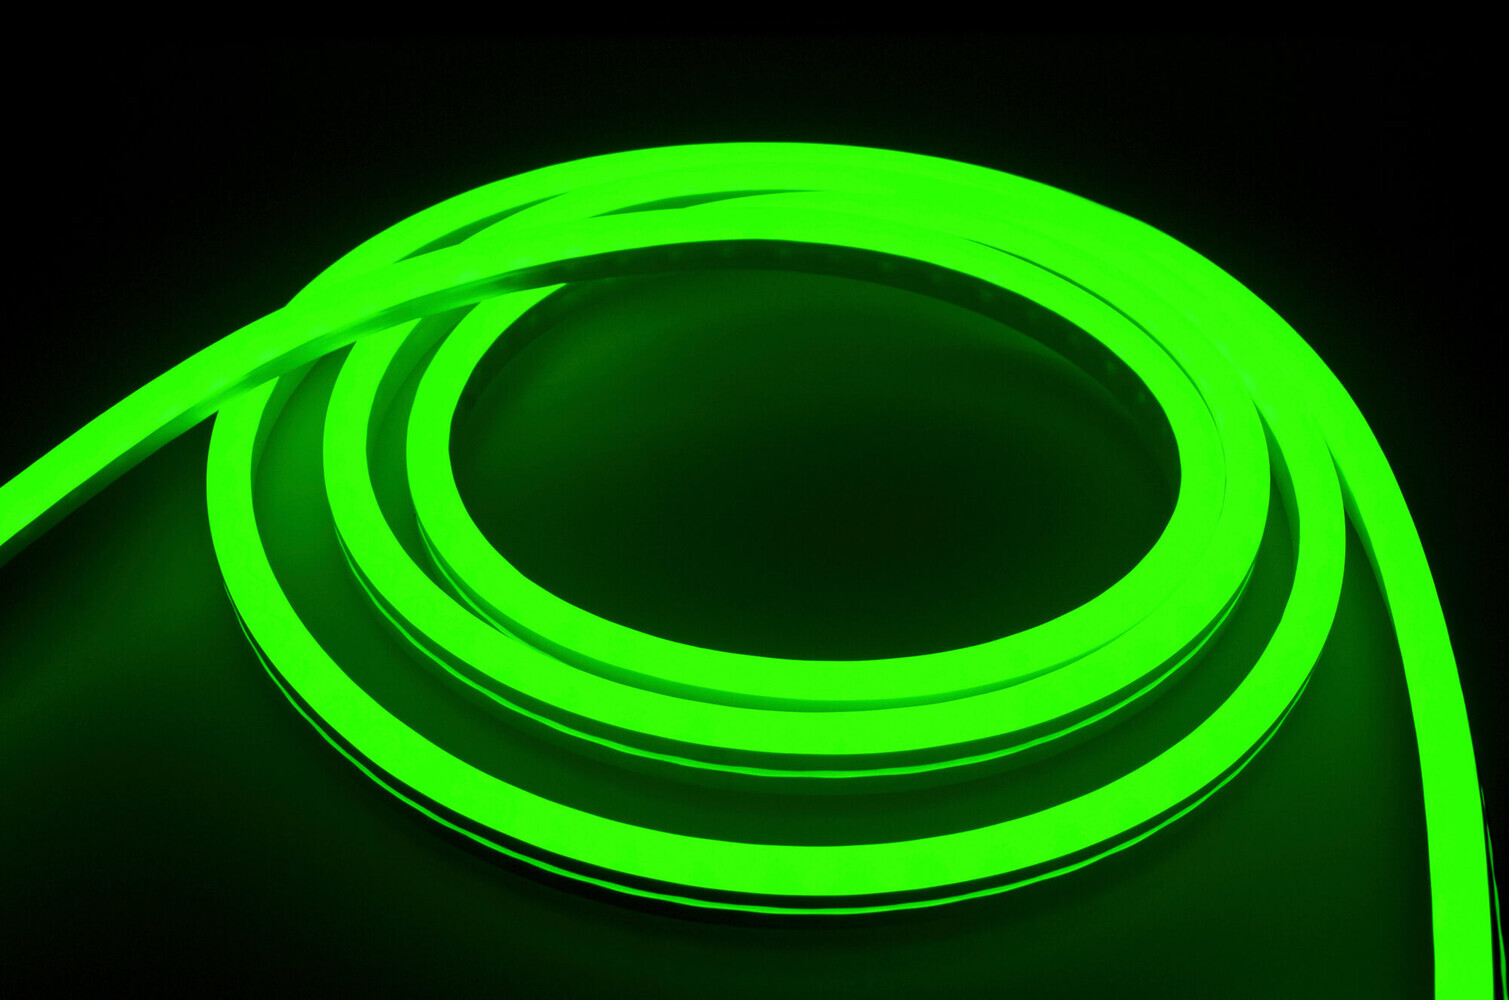 Hochwertiger RGB LED Streifen von LED Universum mit professionellen Einsatzmöglichkeiten im Innen- und Außenbereich